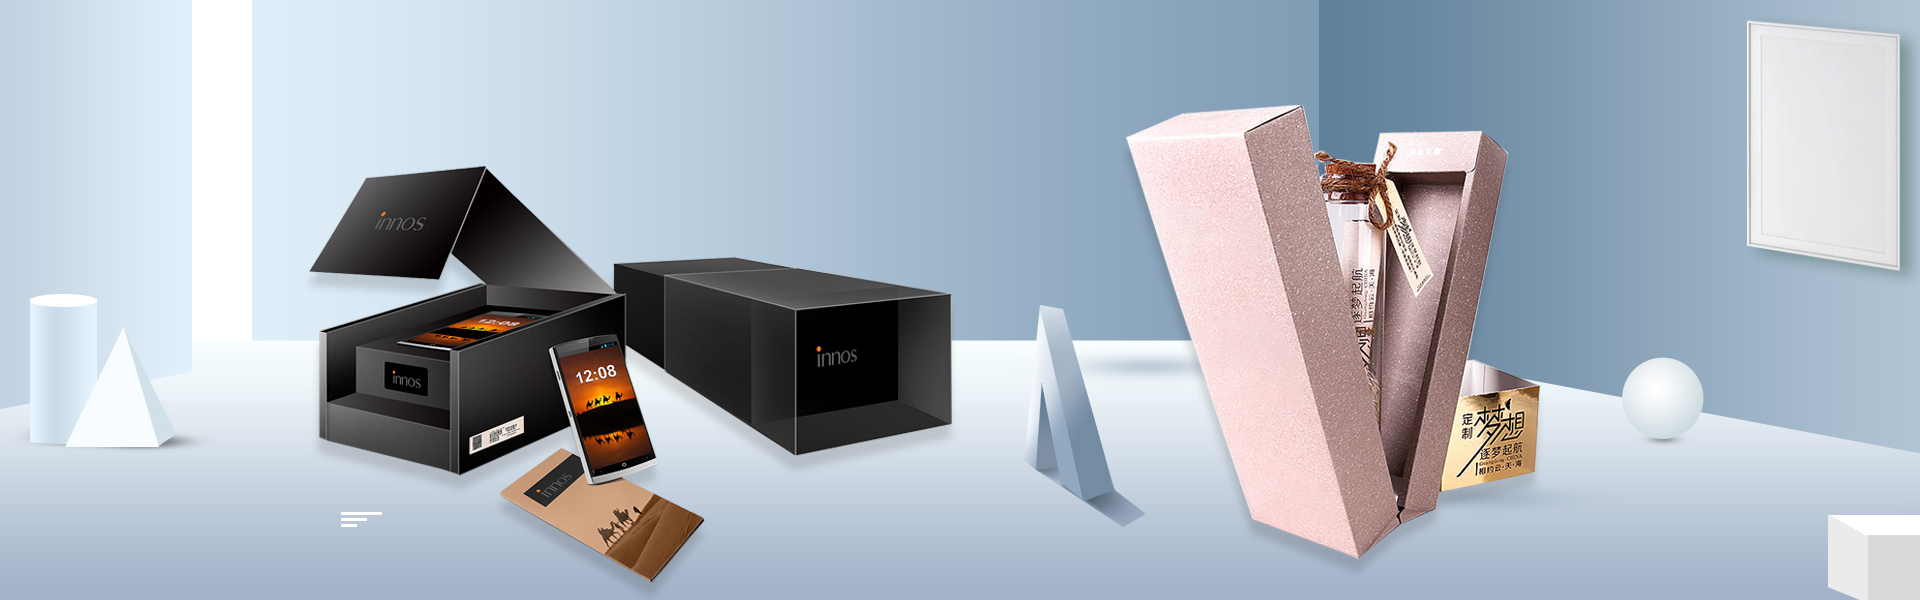 Προσαρμοσμένο κουτί, κουτί δώρου, κουτί ομορφιάς,Beifan Packaging Co., Ltd.